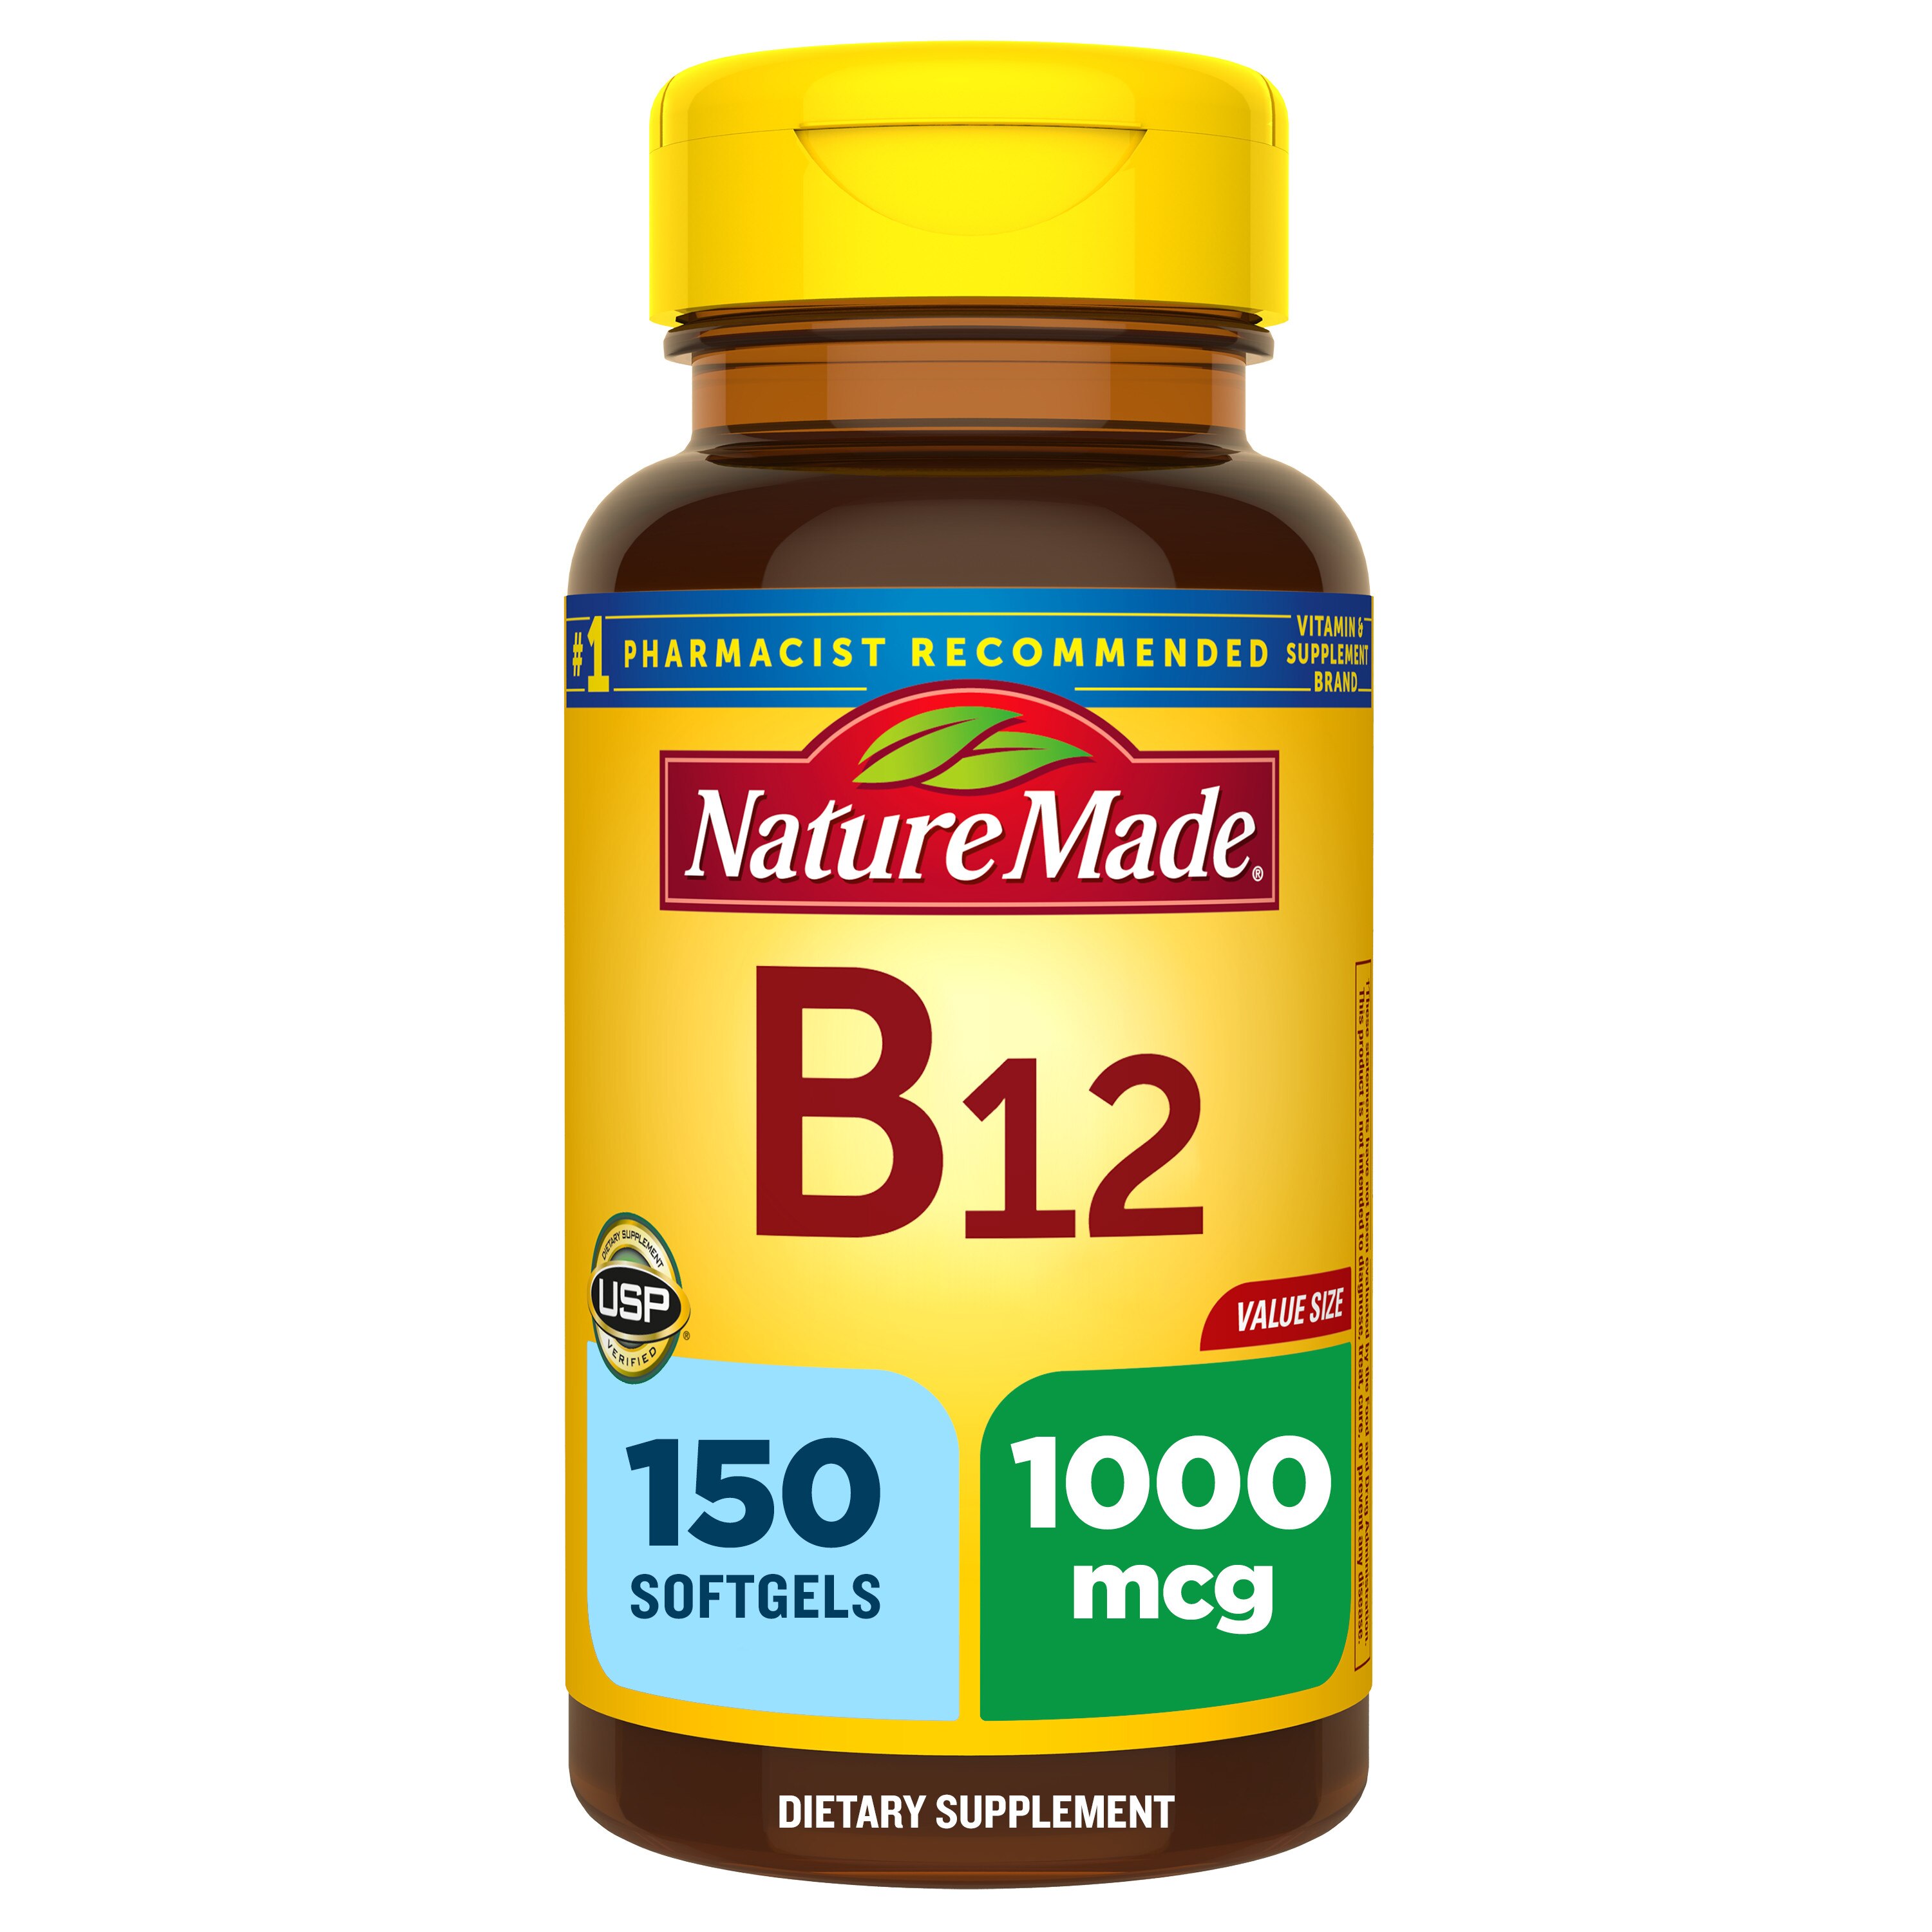 Nature Made Vitamin B12 1000 mcg Softgels, 150 CT